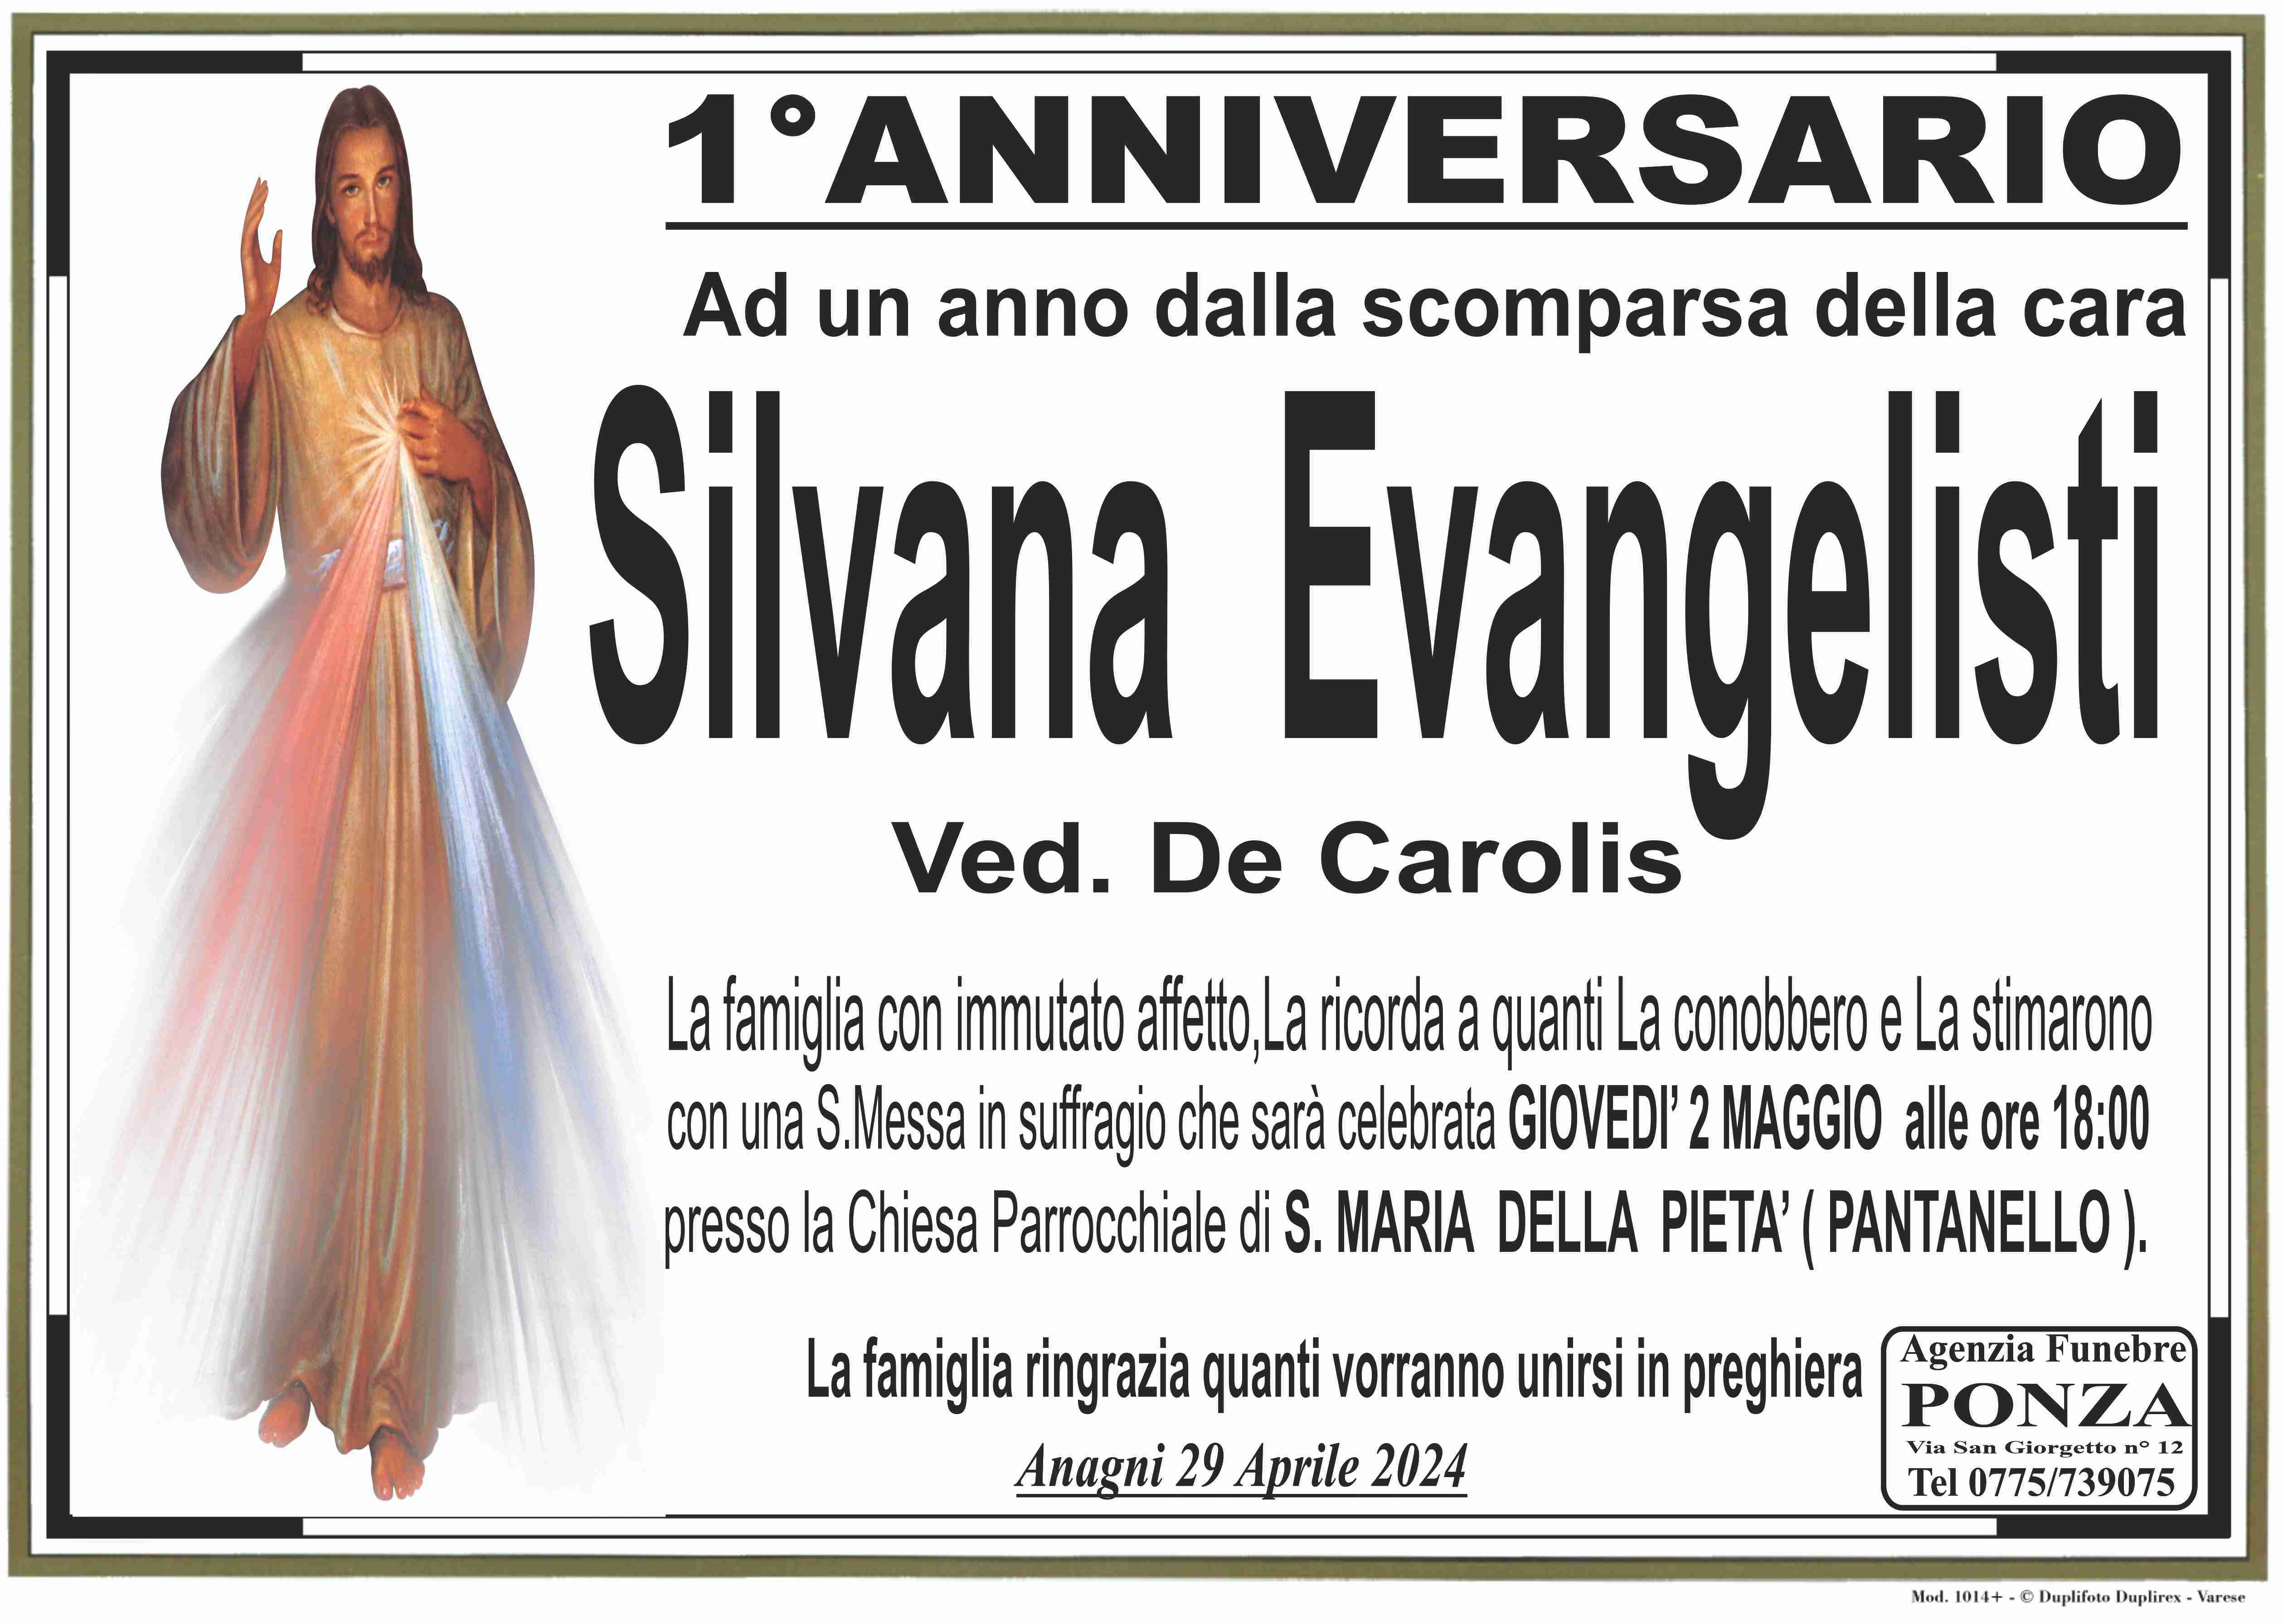 Silvana Evangelisti